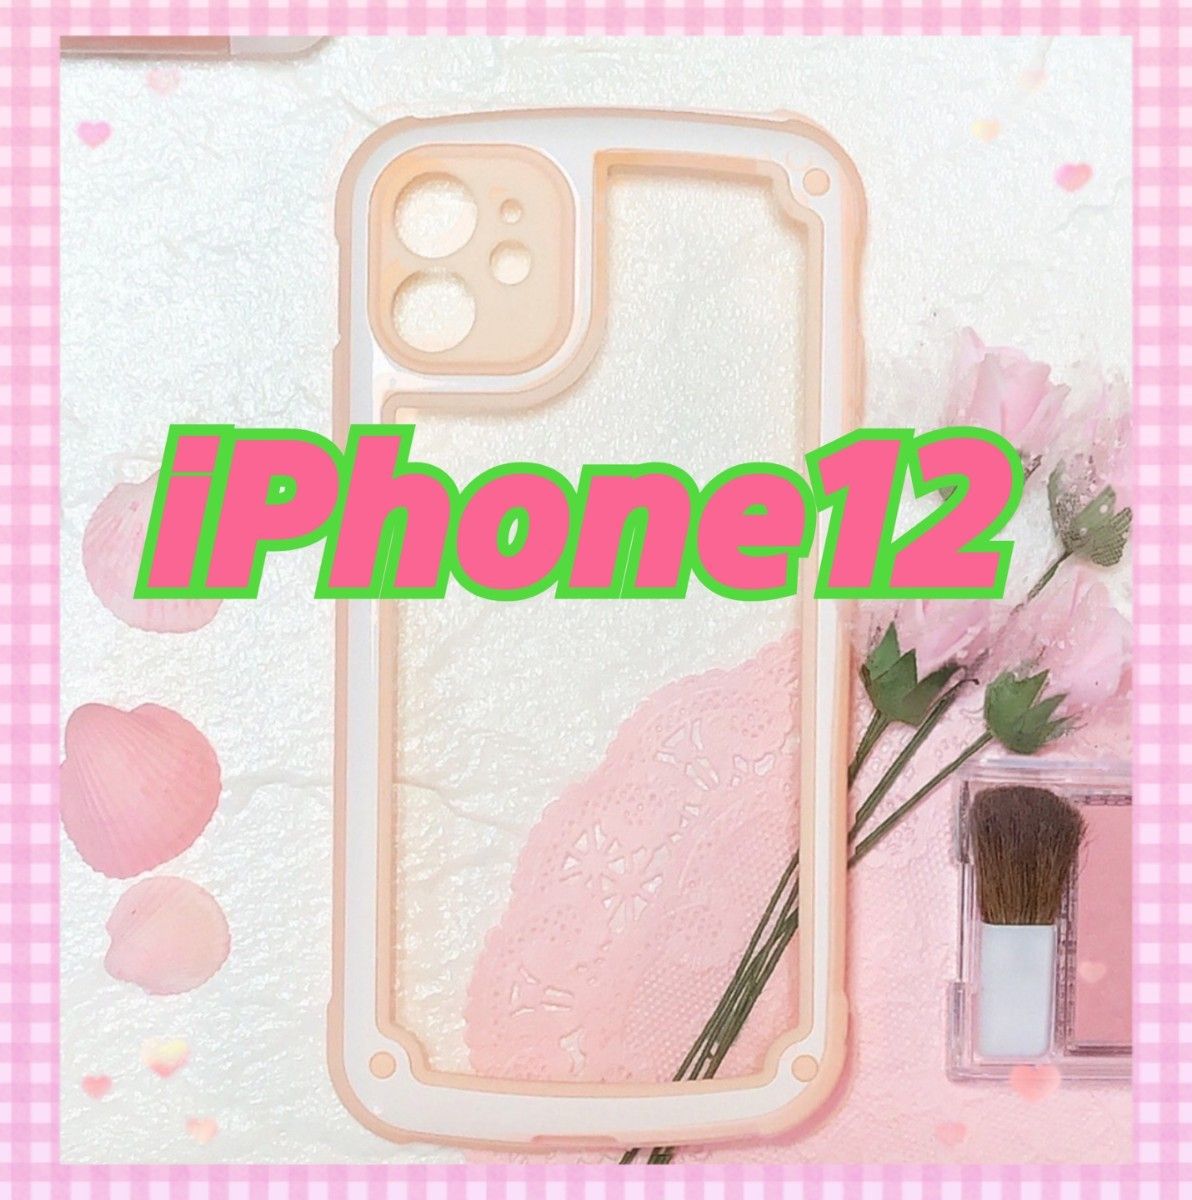 即決 送料無料 【iPhone12】ピンク iPhoneケース シンプル フレーム iPhone スマホカバー スマホケース